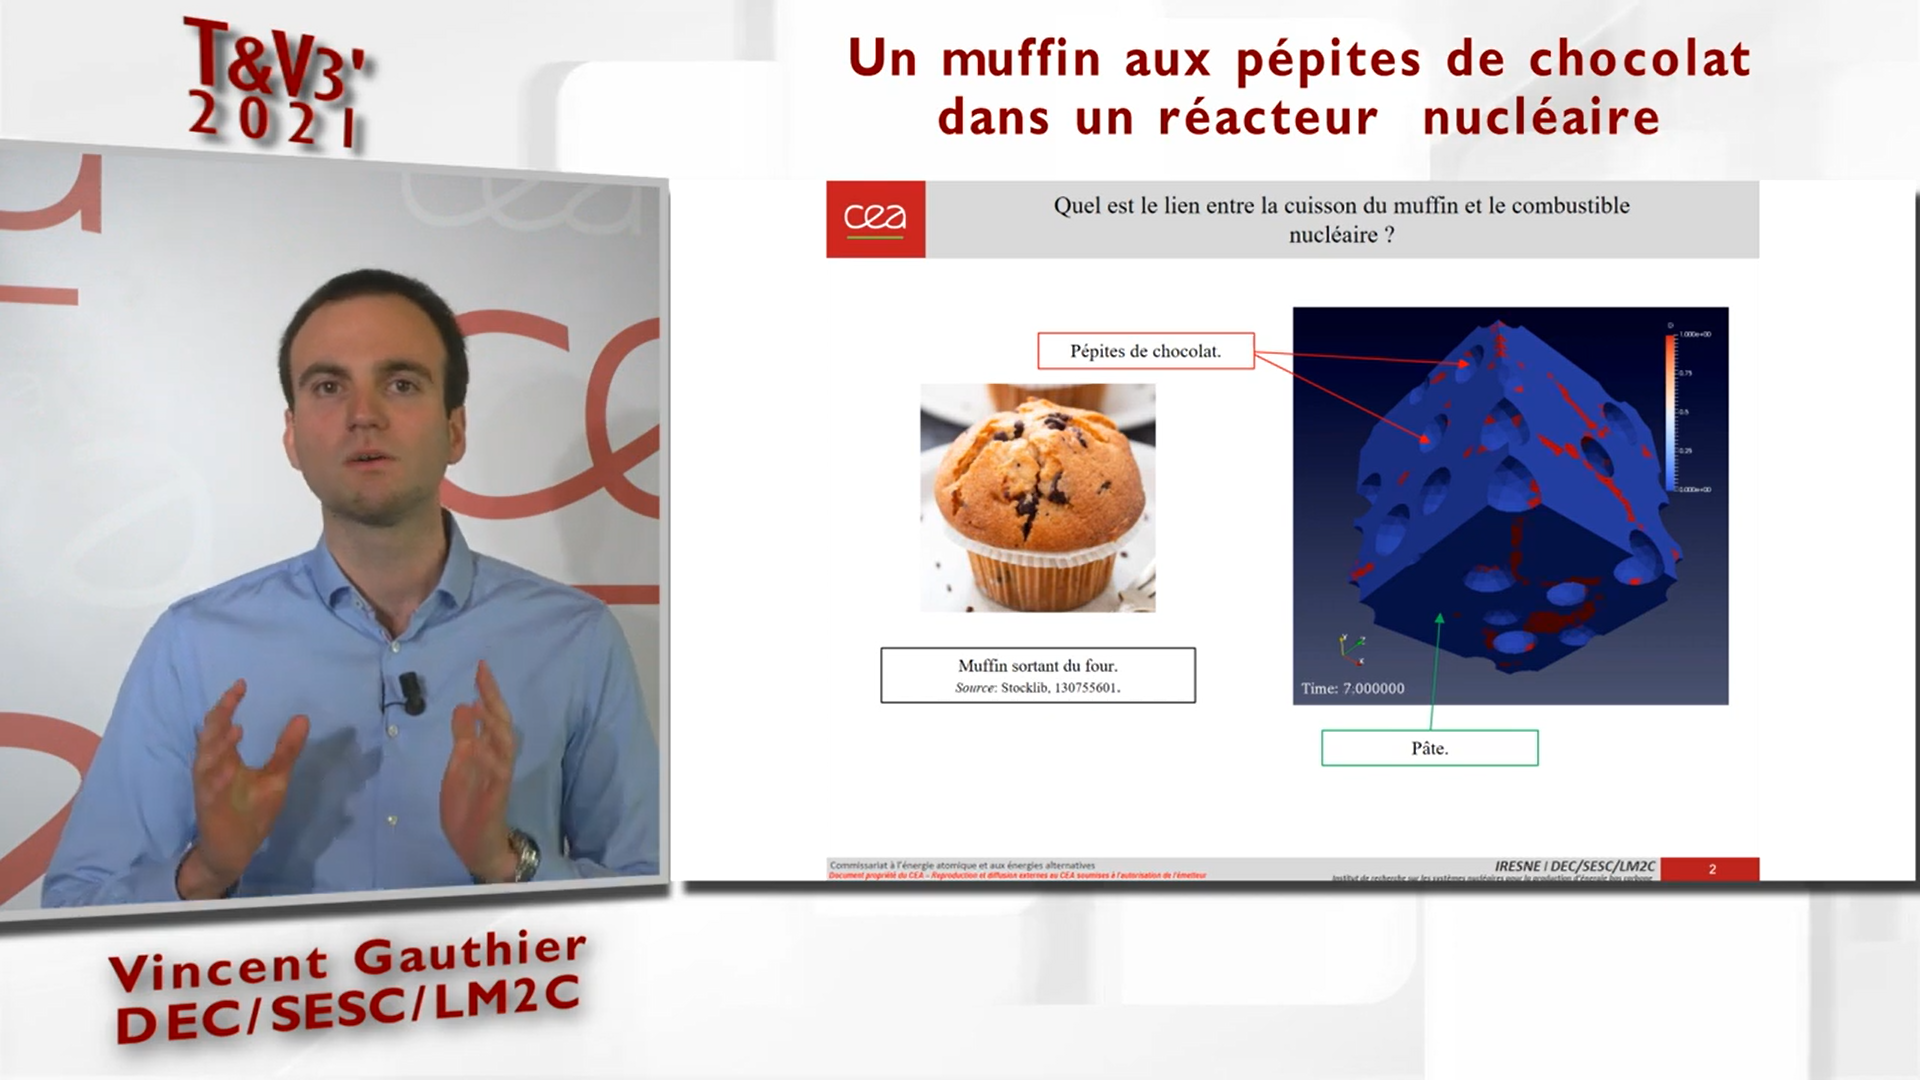 ​"Un muffin aux pépites de chocolat dans un réacteur nucléaire ?" par Vincent Gauthier.